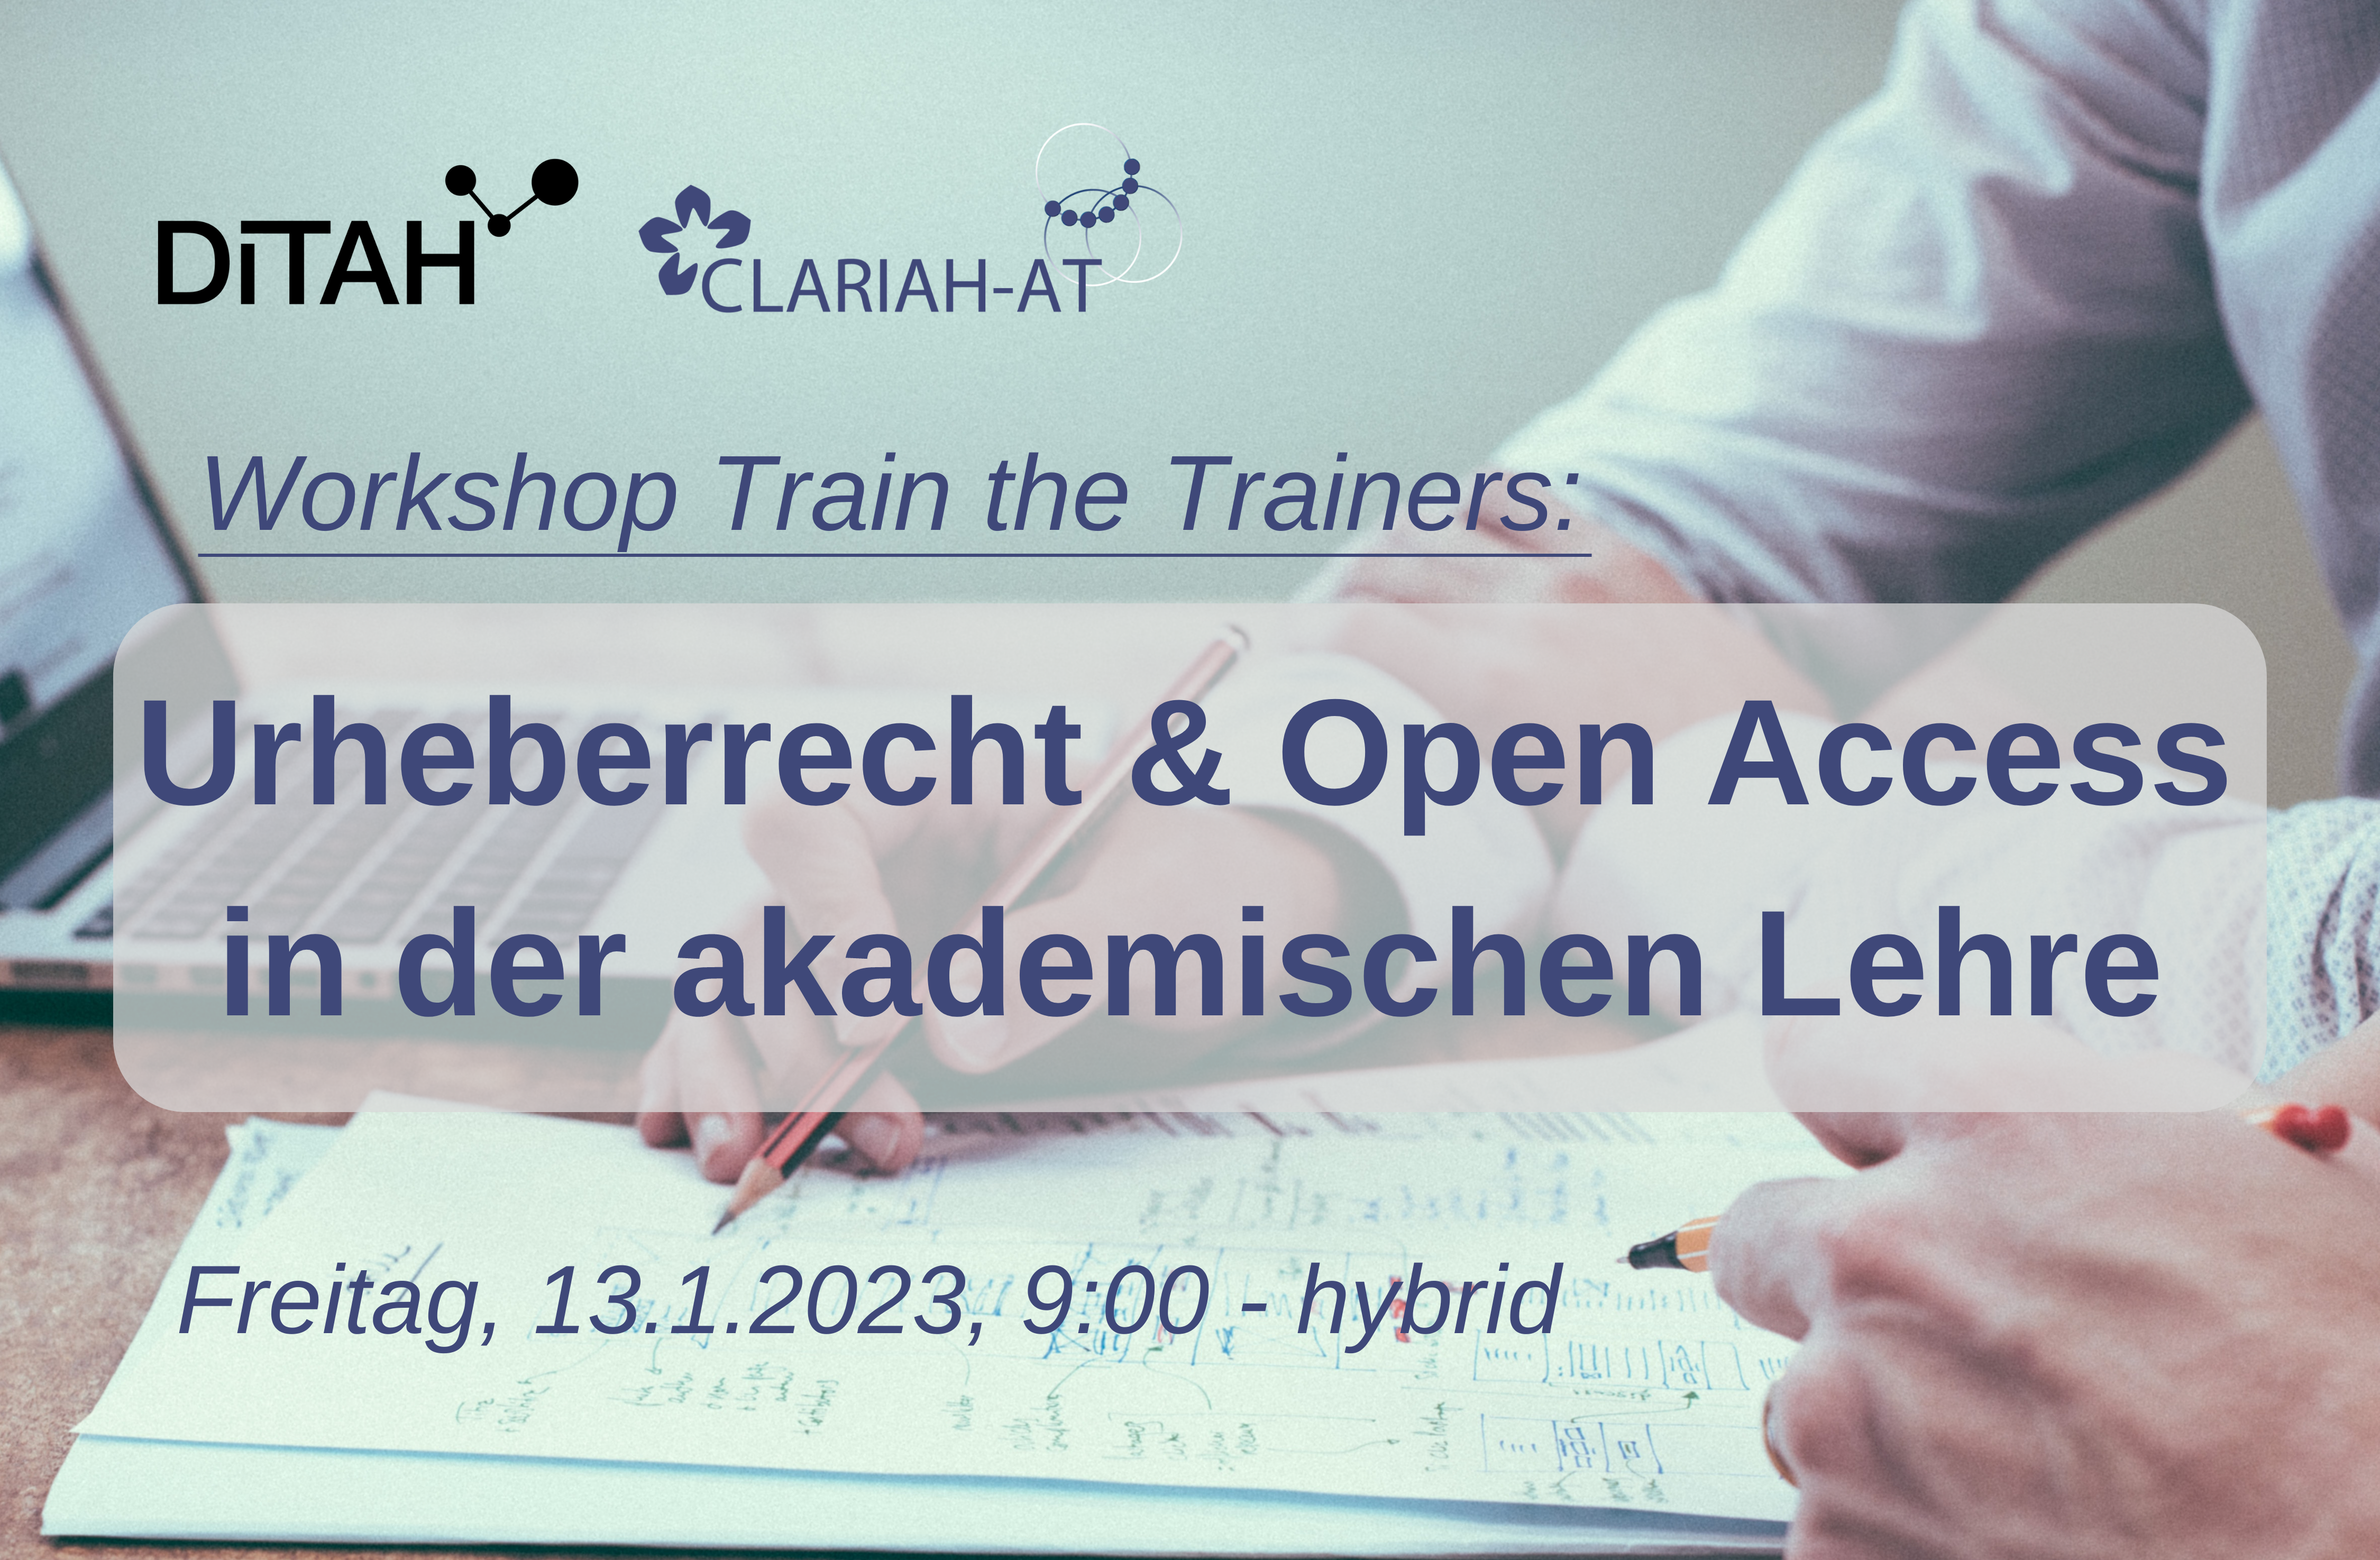 Train the Trainers: Urheberrecht & Open Access in der akademischen Lehre